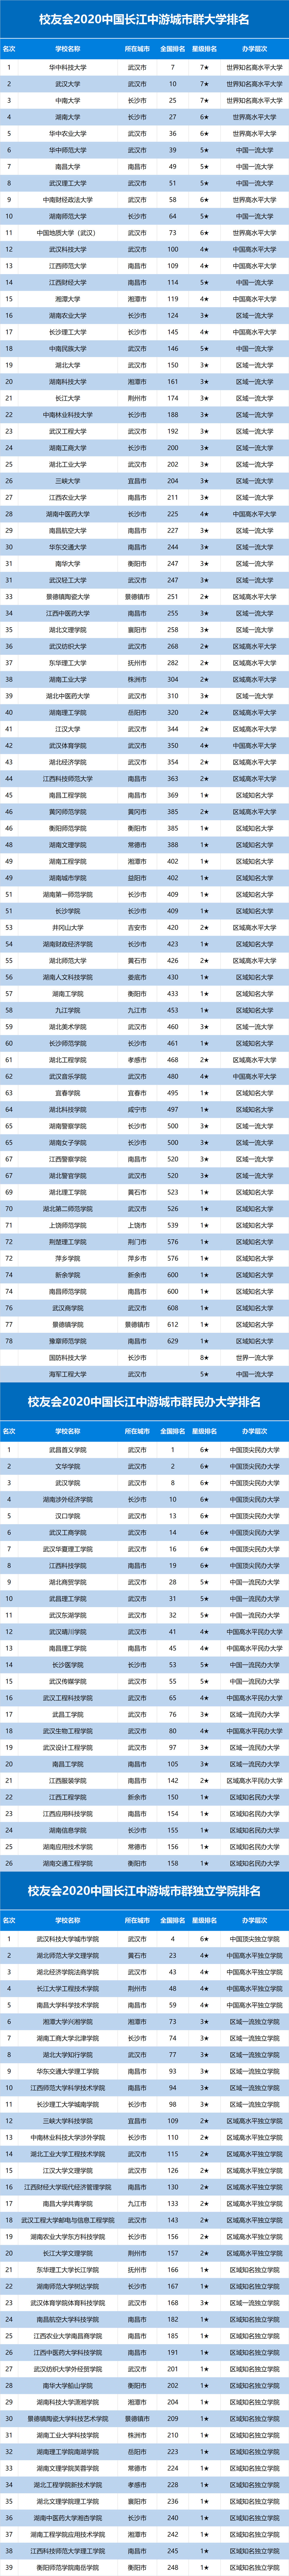 2020年陕科大全国排名_2020中国长三角大学排名发布,复旦大学第1,上海交通